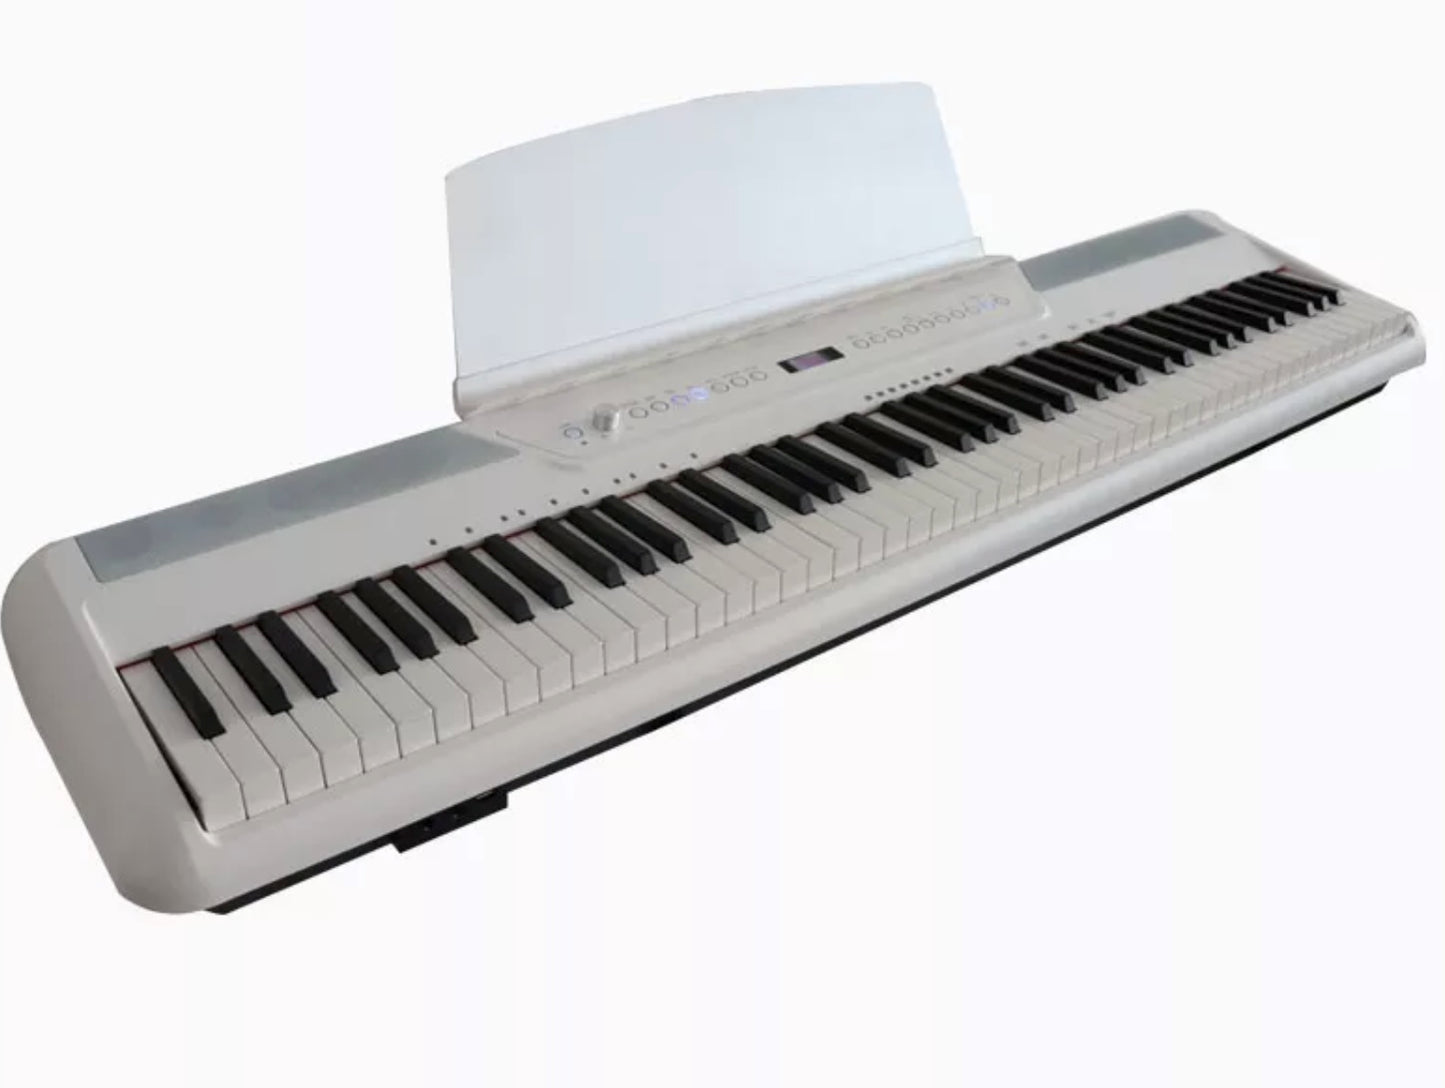 Finechord 88 weighted key beginner's digital piano keyboard with rhythm FC-DP125